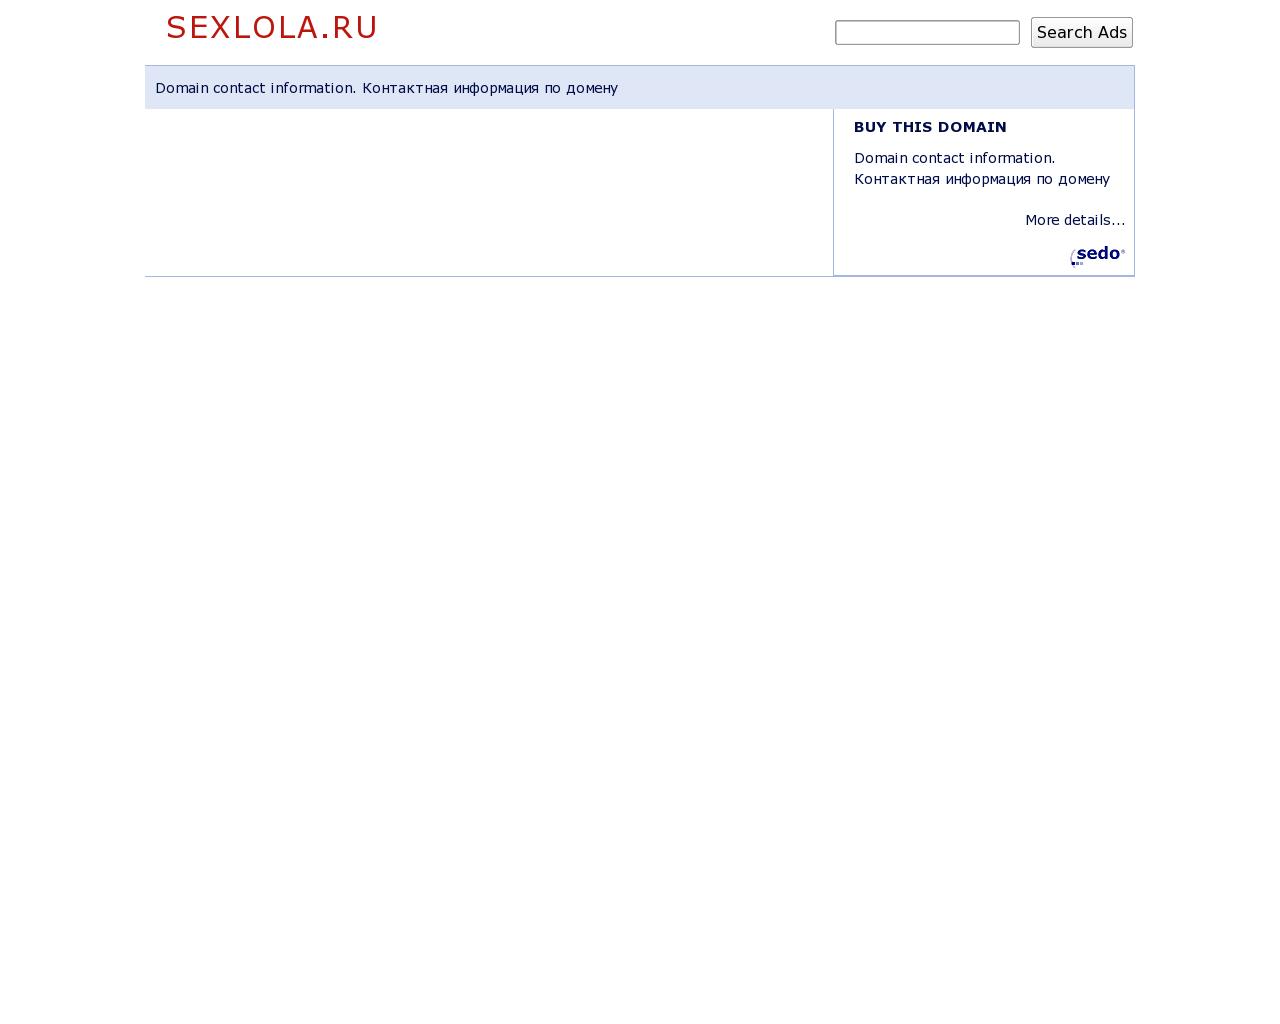 Изображение сайта sexlola.ru в разрешении 1280x1024